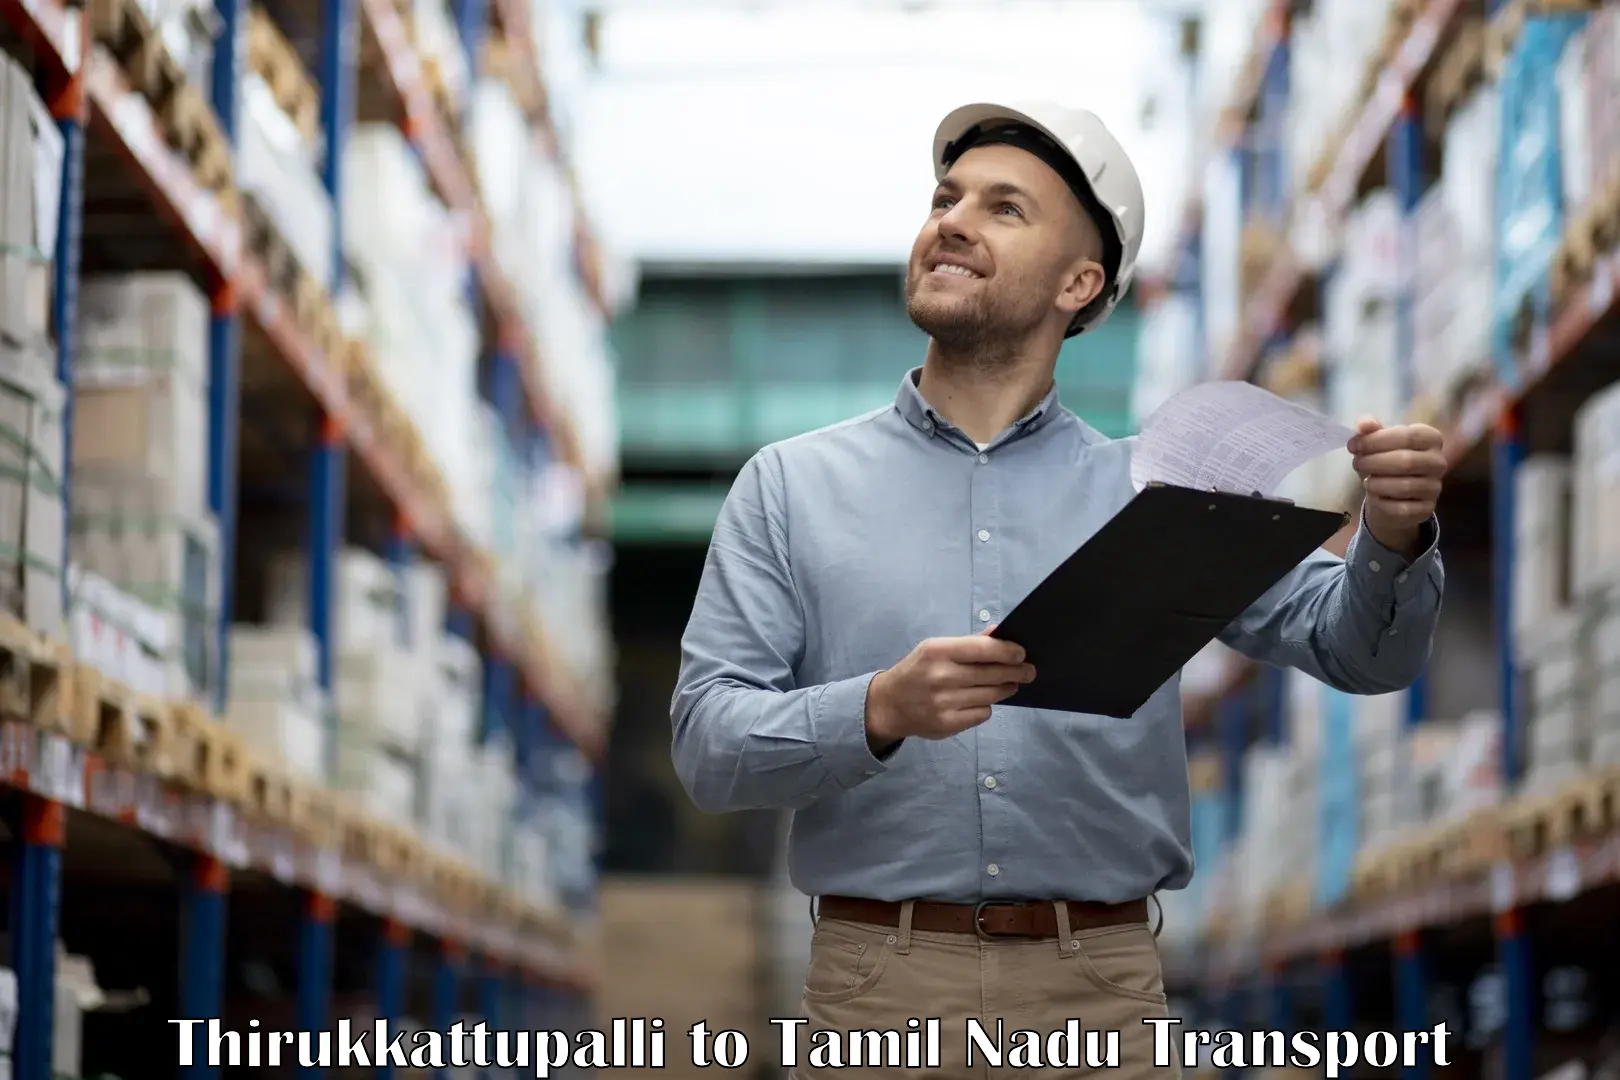 Logistics transportation services Thirukkattupalli to Tirunelveli